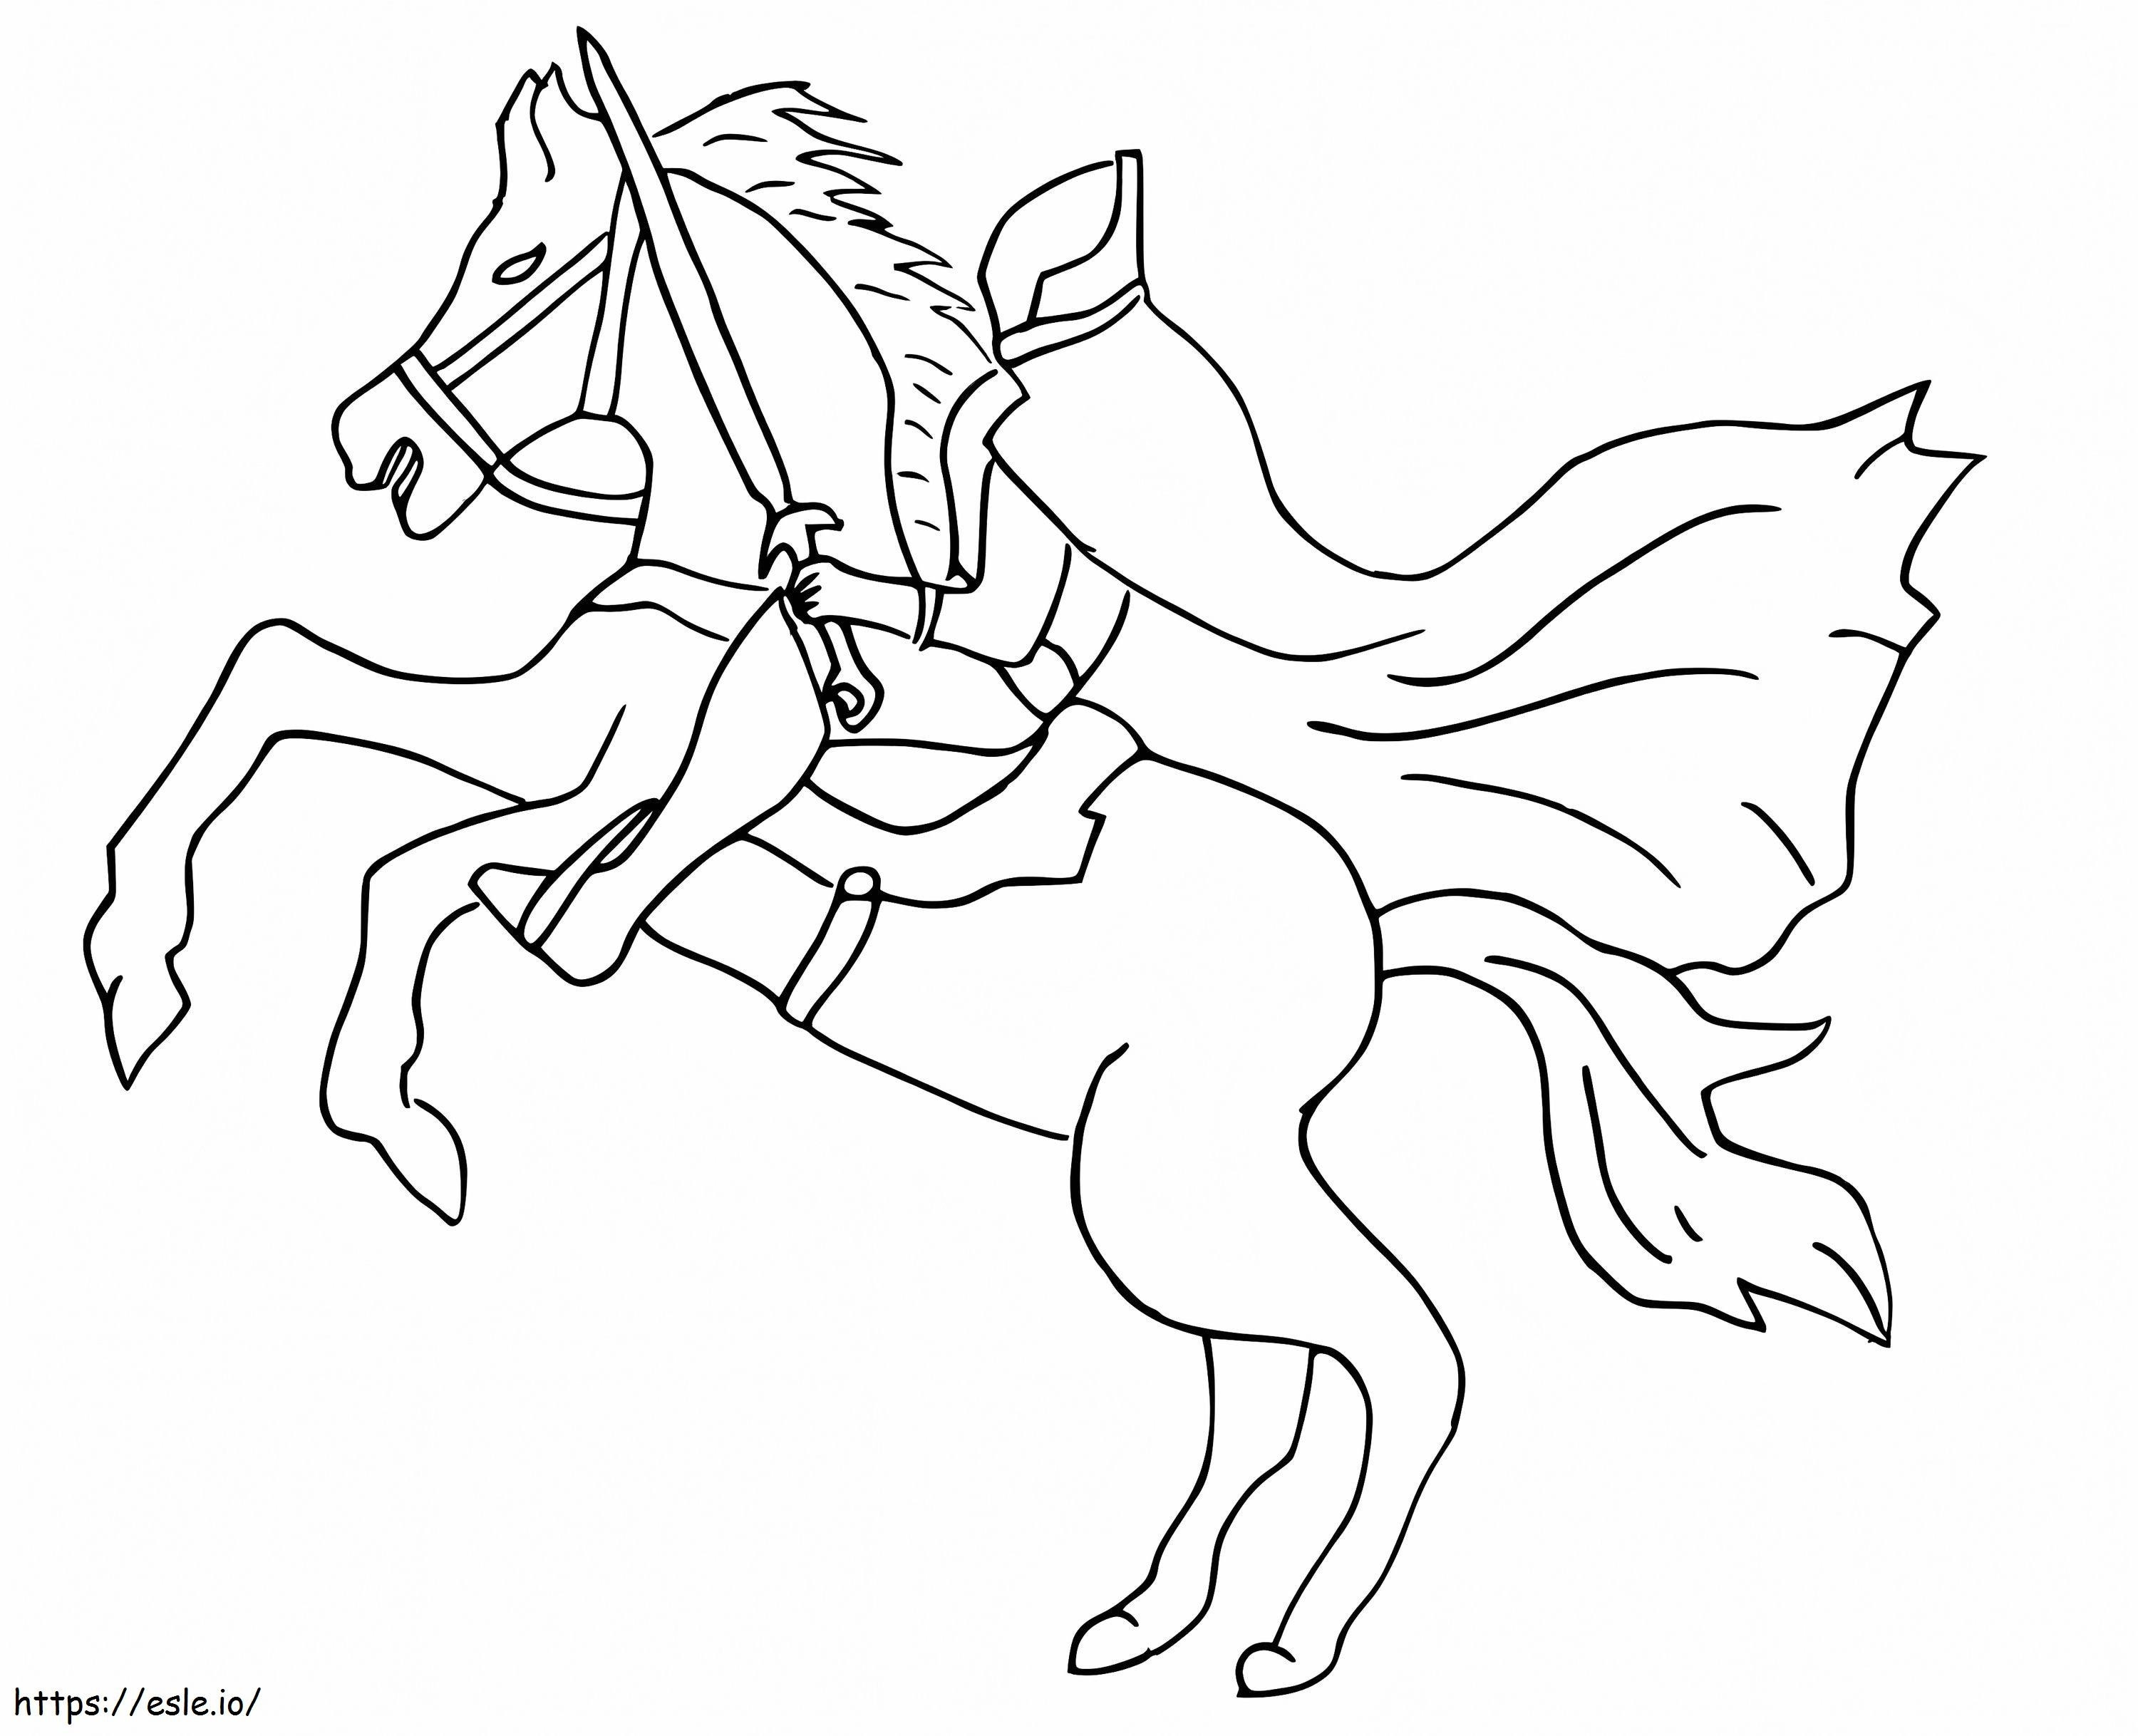 Kopfloser Reiter mit Schwert ausmalbilder